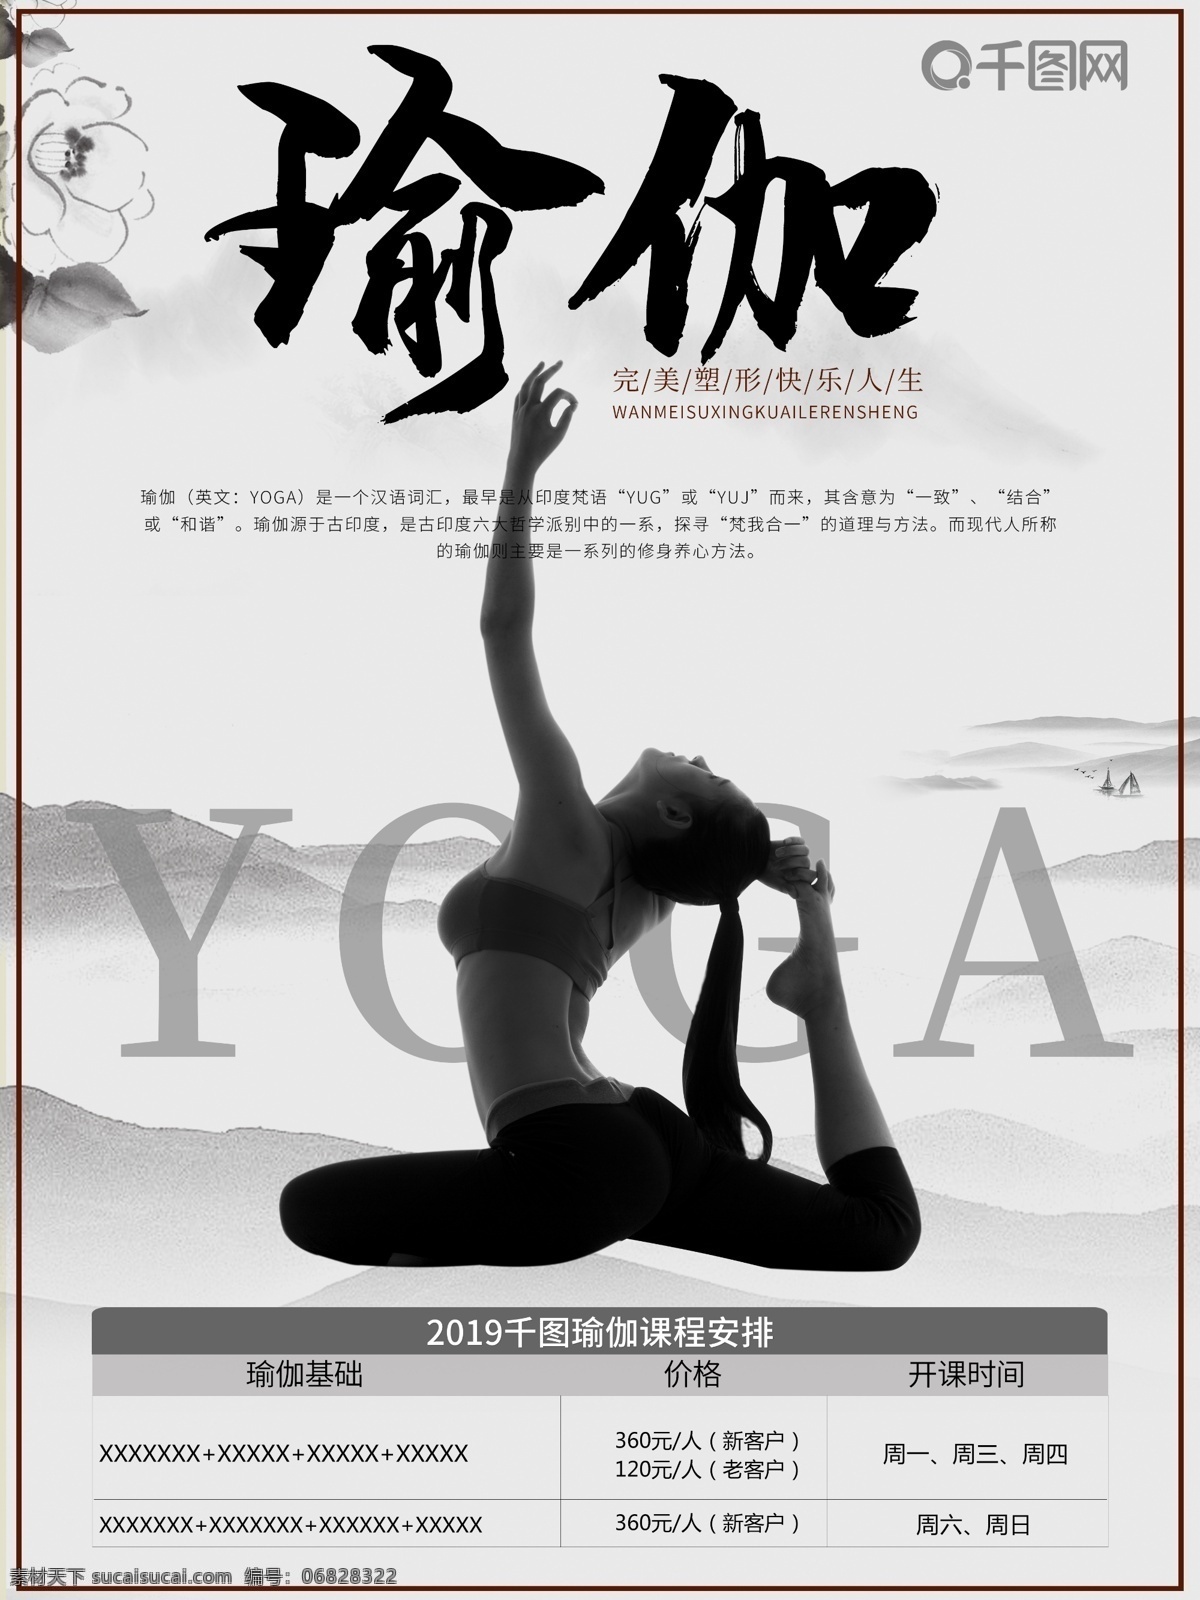 瑜伽 柔美 女性 健身 跑步 运动 中国 风 锻炼 海报 瑜伽海报 女性运动海报 健身海报 运动风海报 健美海报 锻炼健身海报 瑜伽宣传海报 中国风瑜伽 瑜伽宣传单 宣传单 女性瑜伽